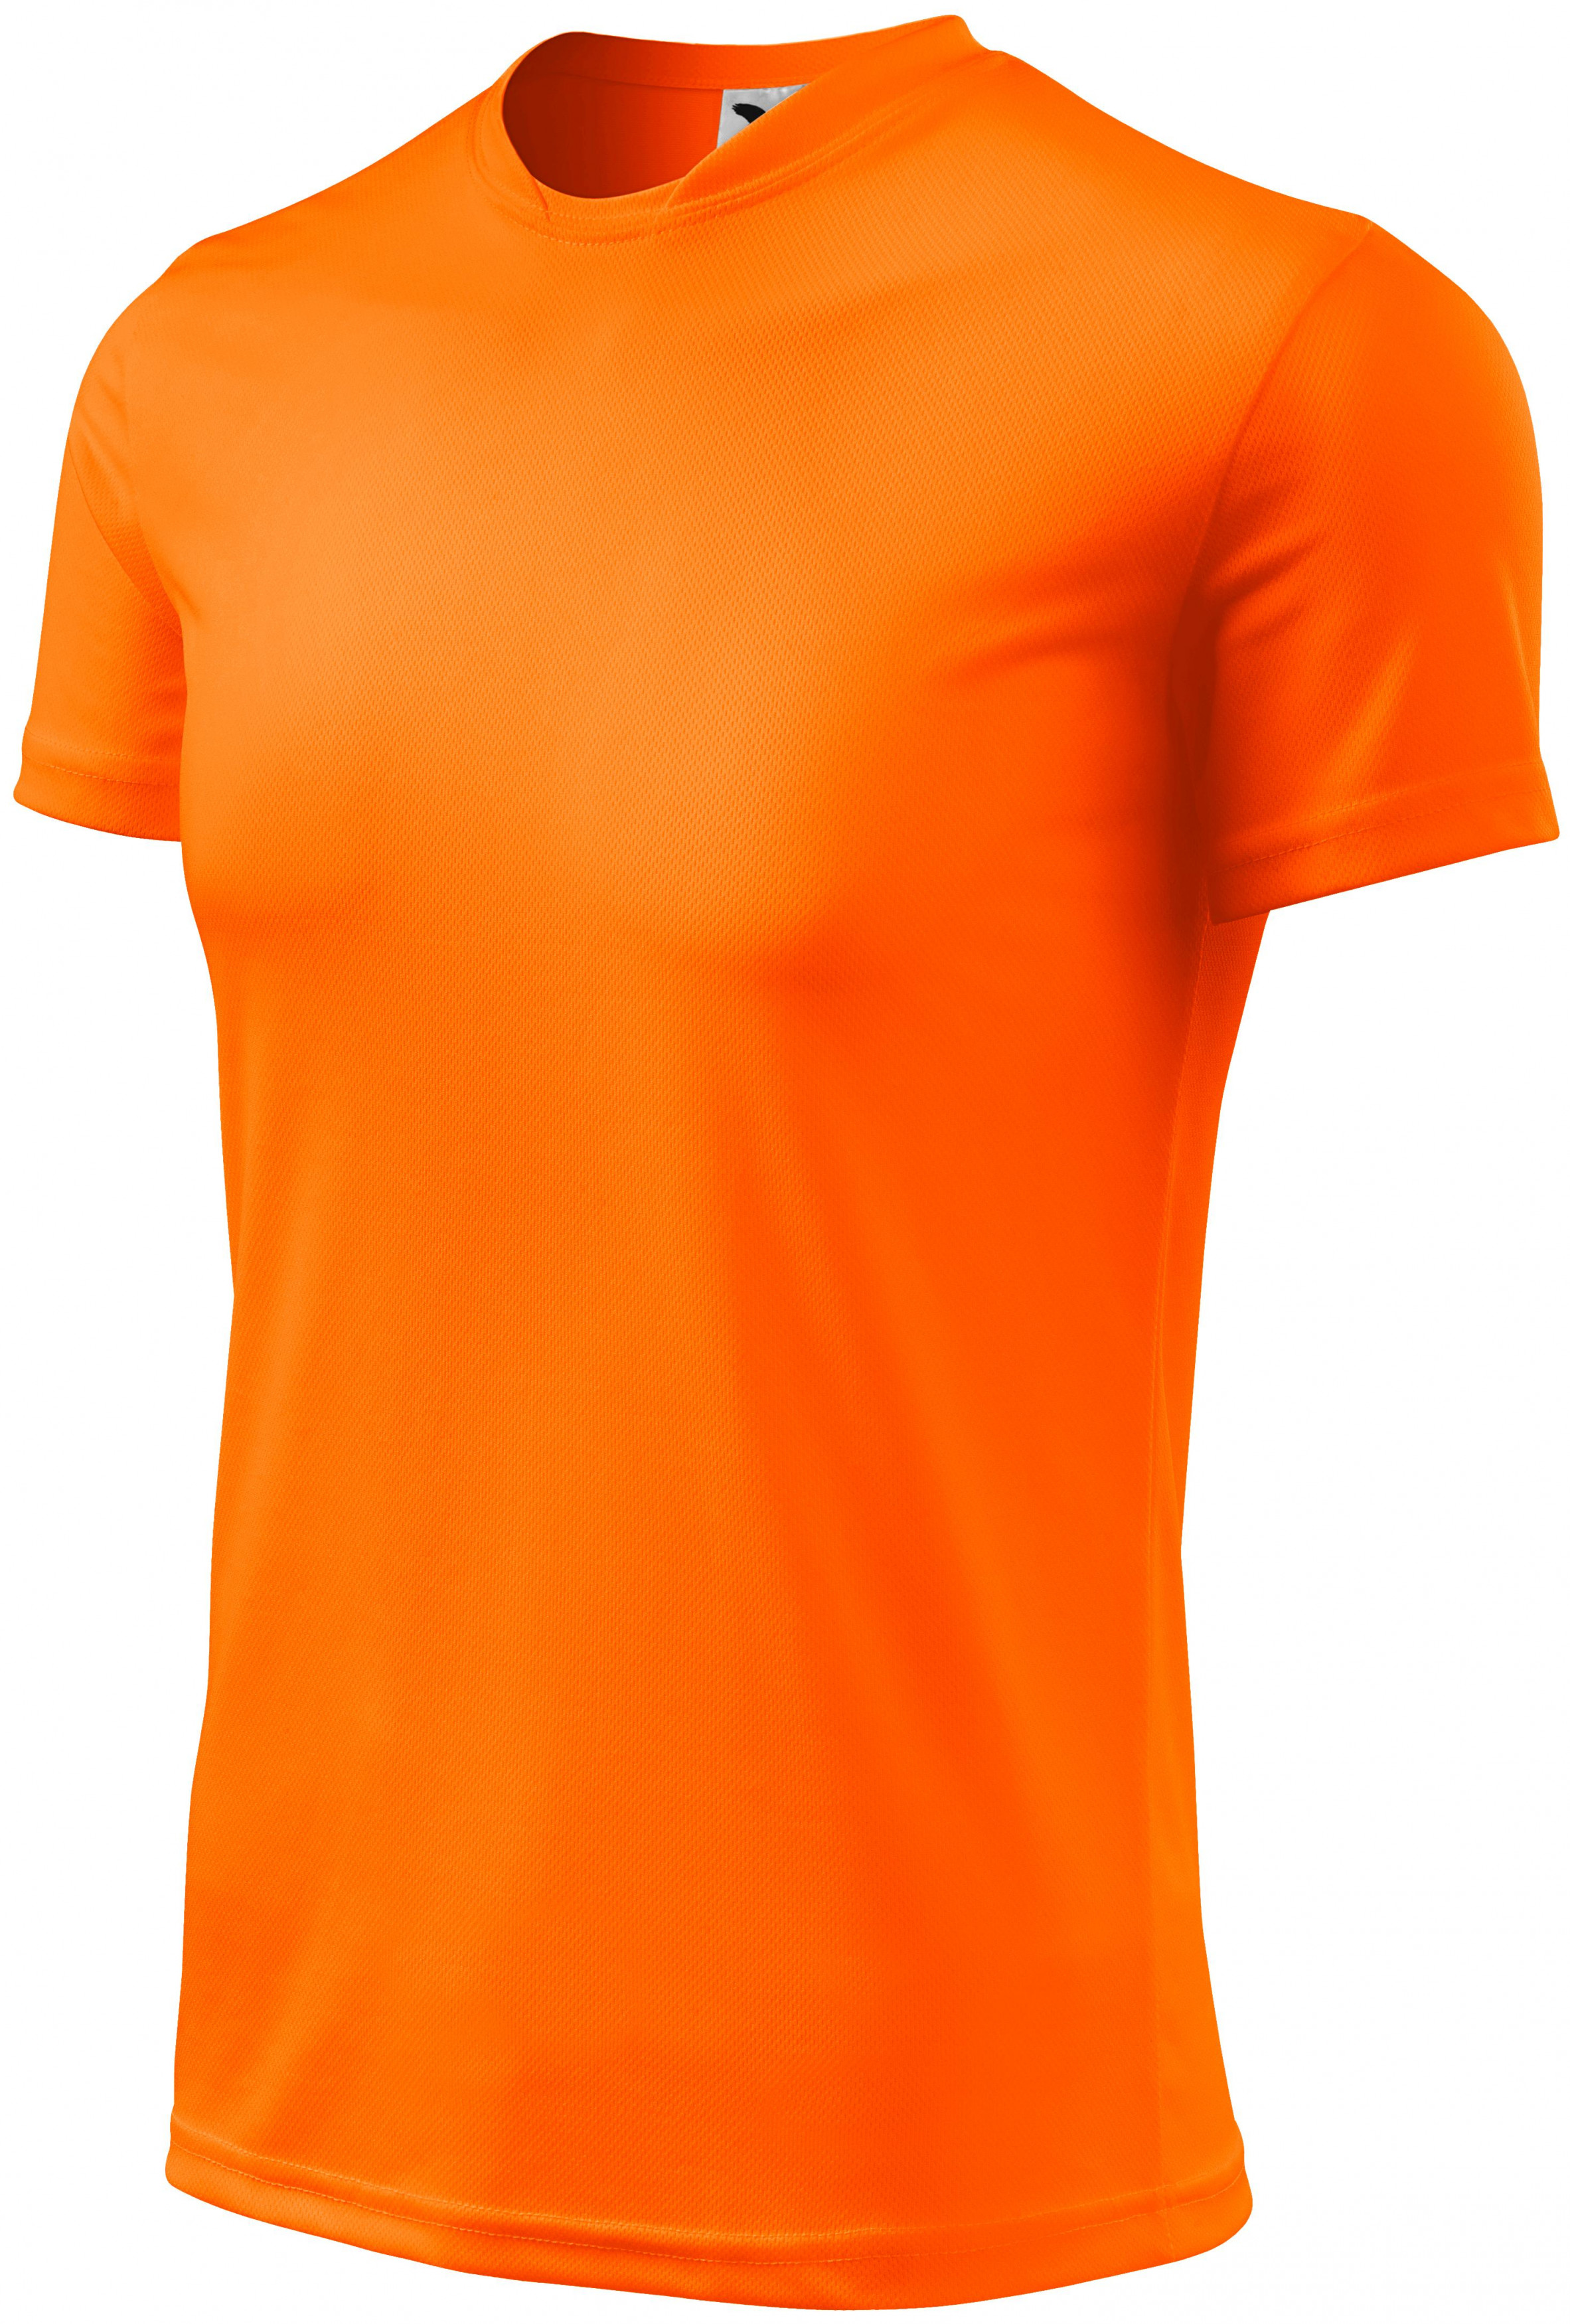 Športové tričko detské, neónová oranžová, 122cm / 6rokov